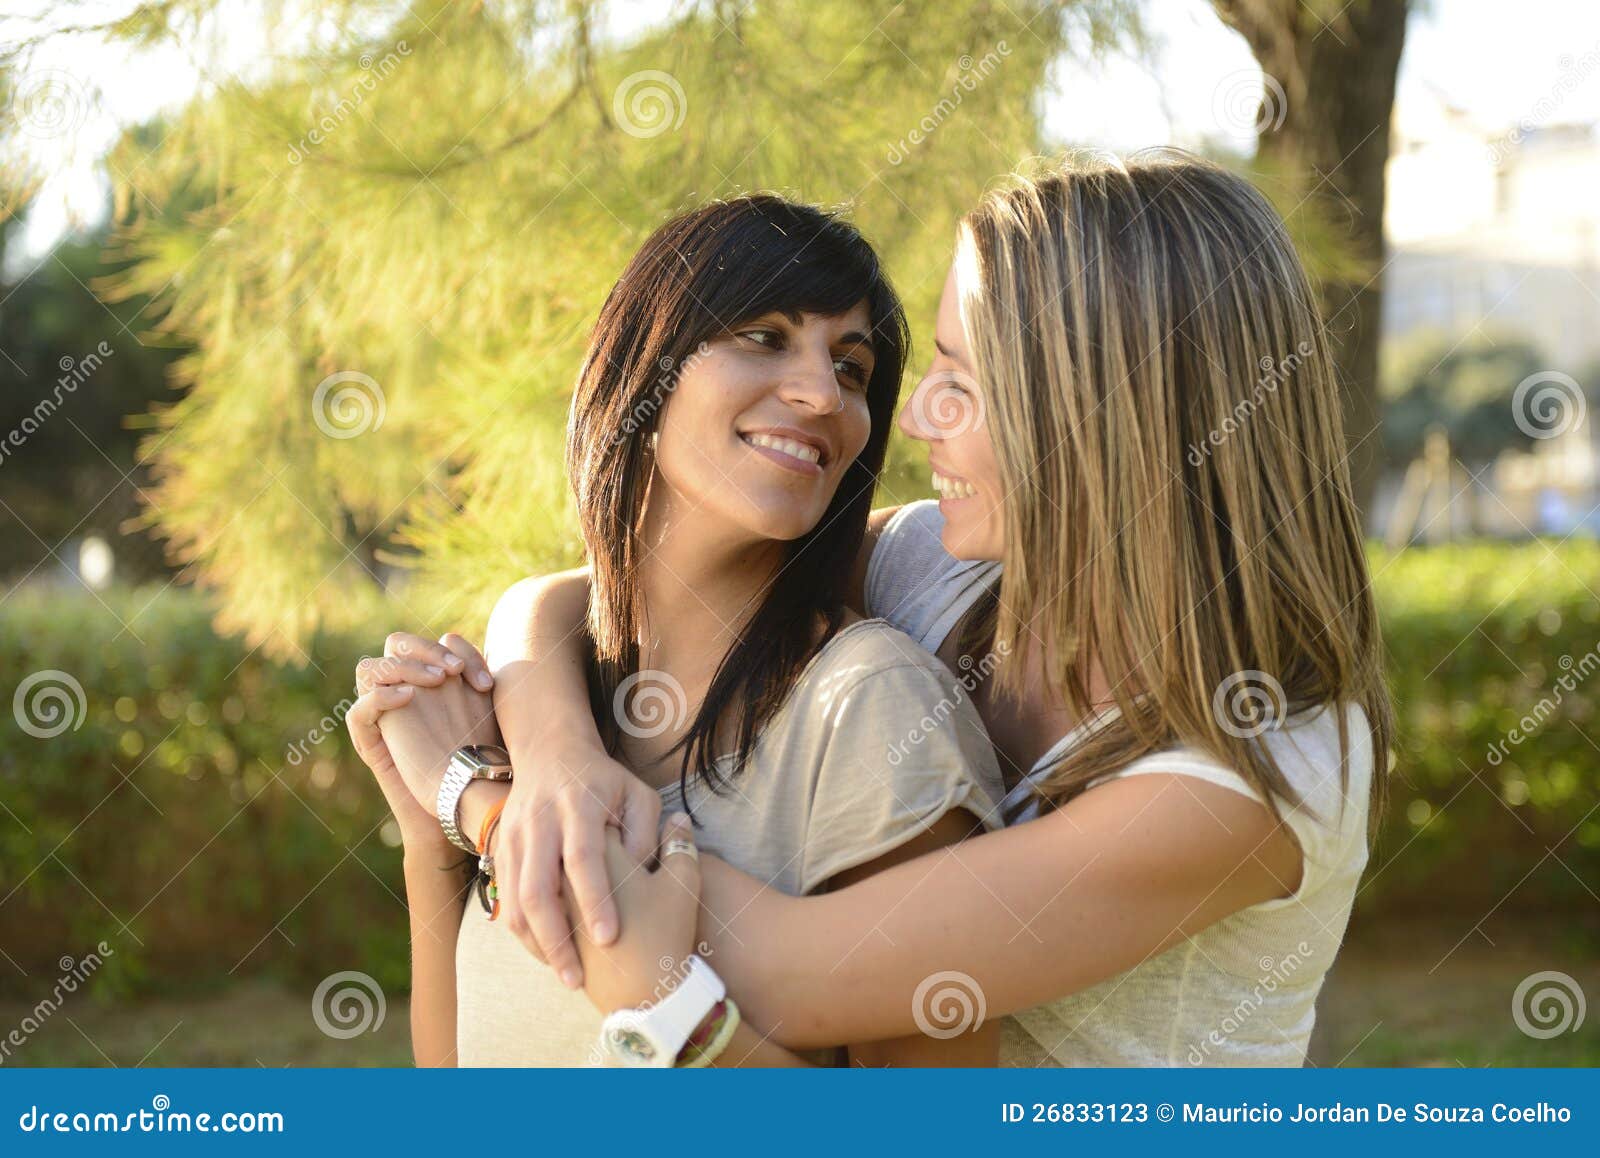 同性亚洲女同性恋的夫妇恋人容忍 库存照片. 图片 包括有 幸福, 复制, 女性, 夫妇, 愉快, 女同性恋者 - 137998590